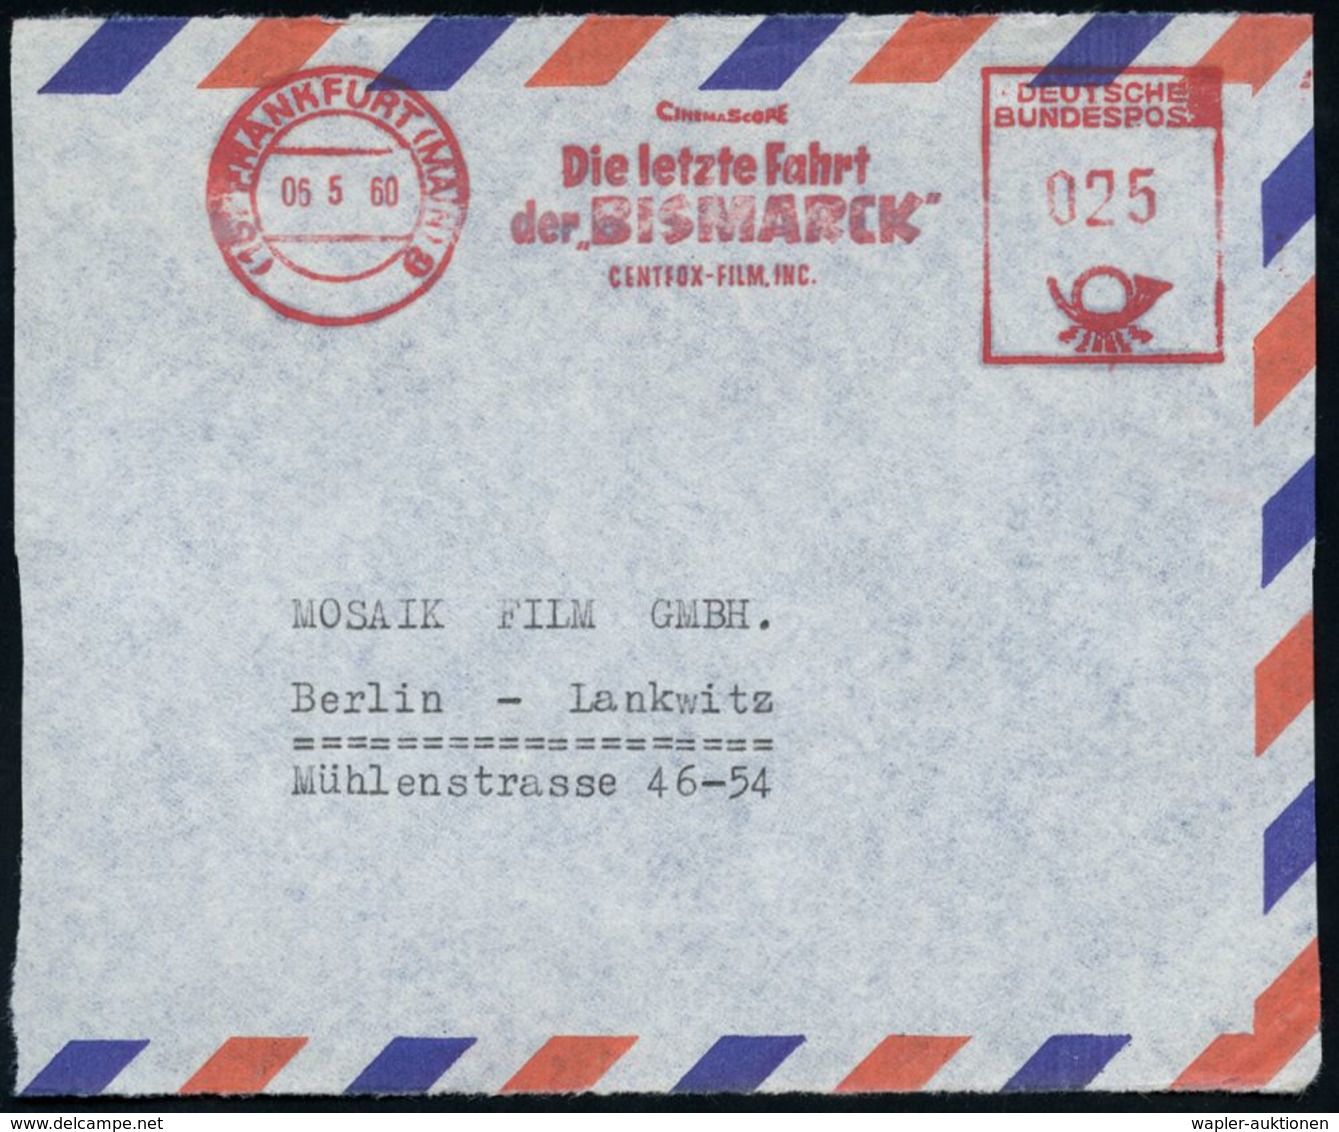 (16) FRANKFURT (MAIN) 9/ CINEMASCOPE/ Die Letzte Fahrt/ Der "BISMARCK"/ CENTFOX-FILM INC. 1960 (6.5.) Seltener AFS = Fil - Cinema